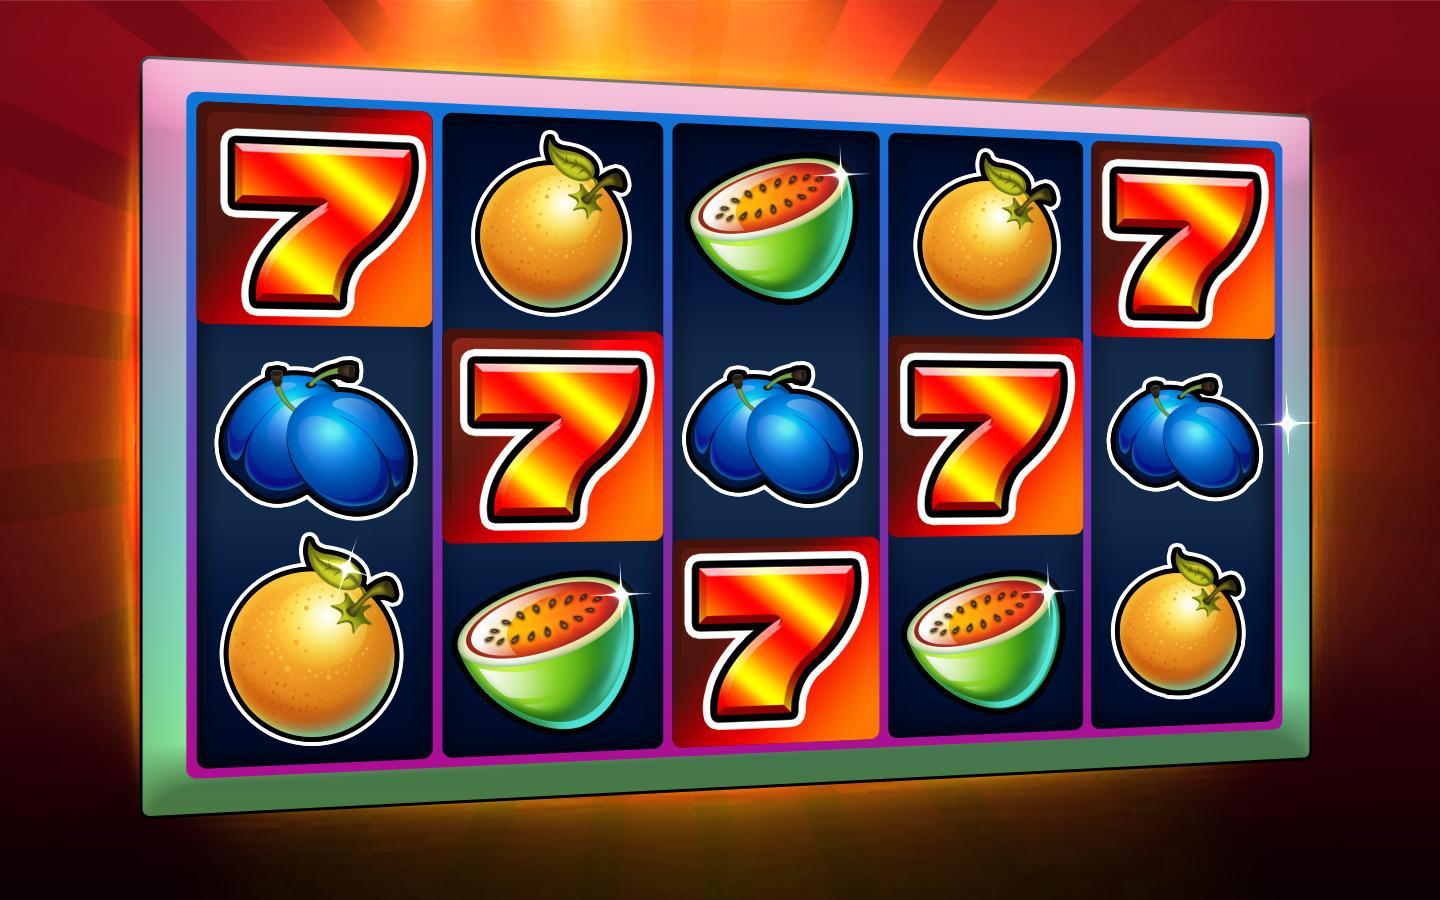 Ra slots - casino slot machines 1.7.2 Screenshot 3